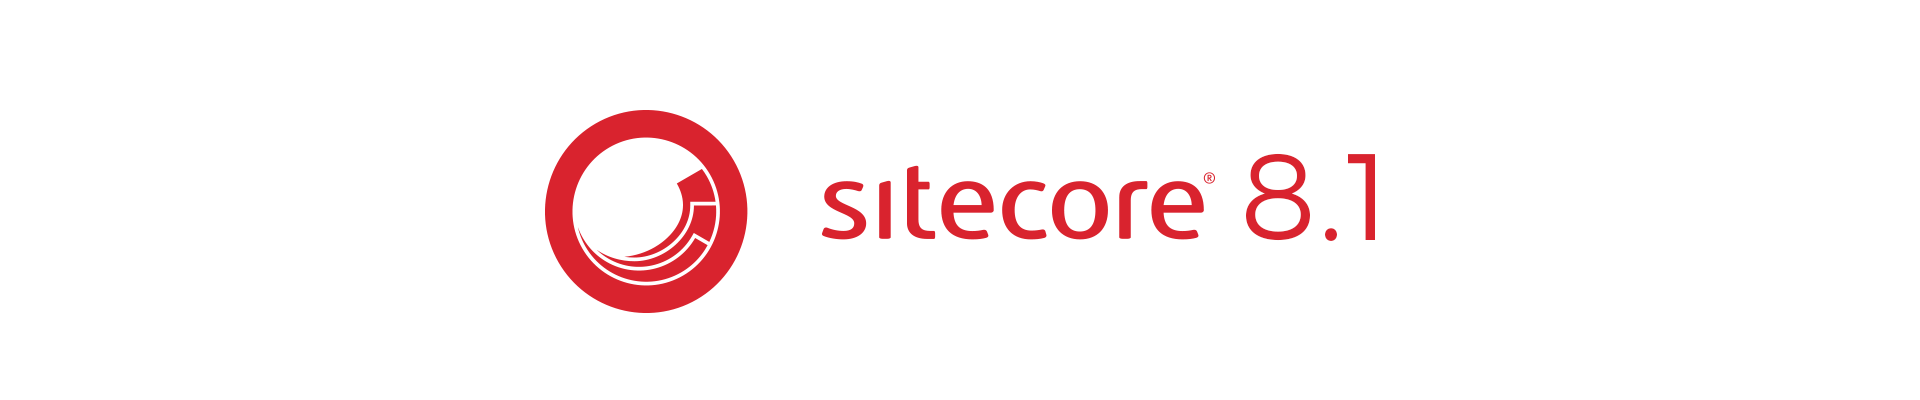 sitecore 8.1